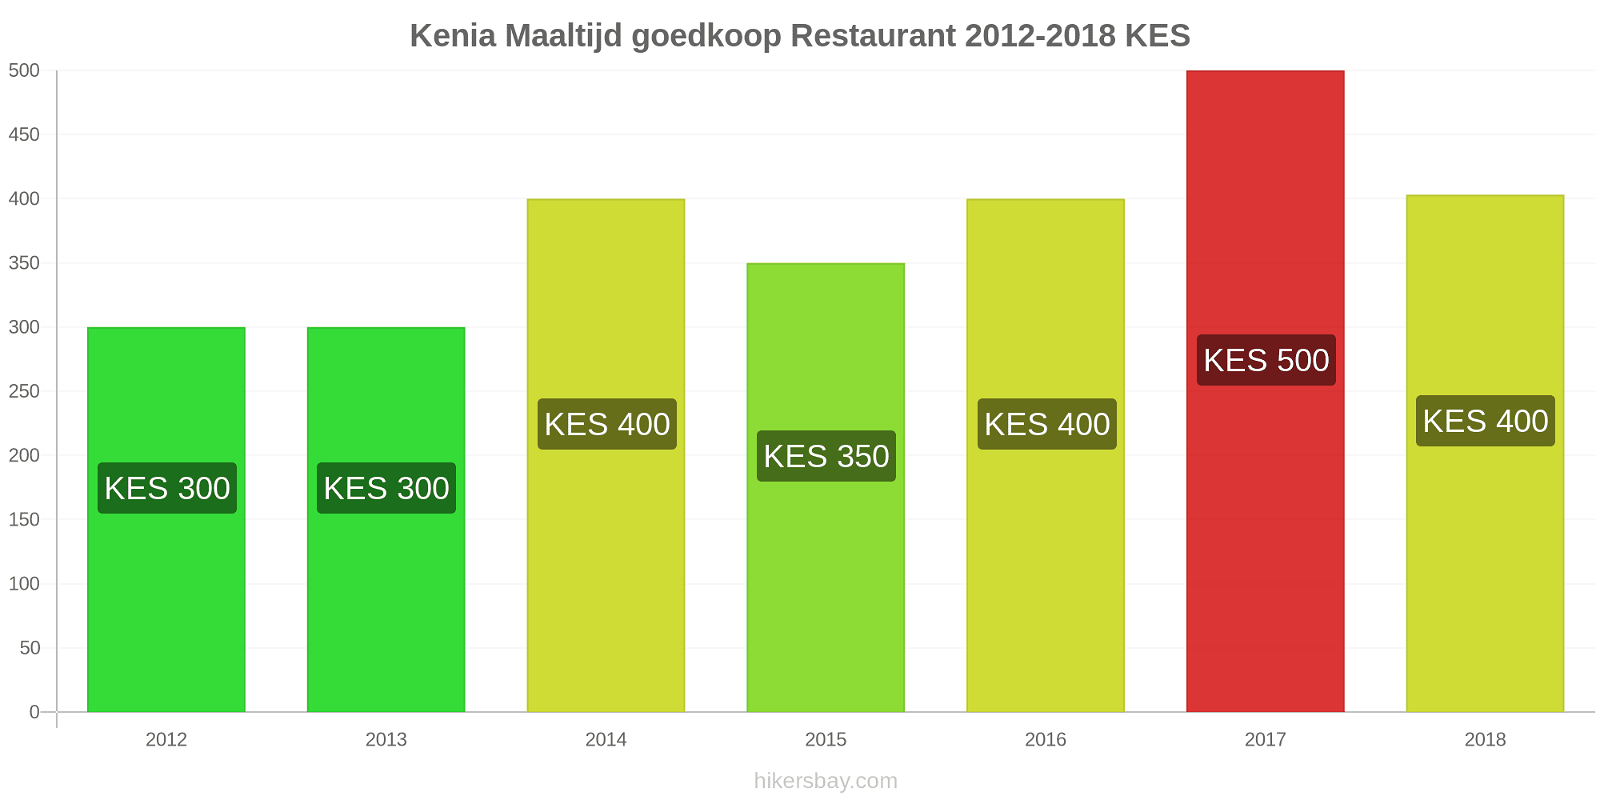 Kenia prijswijzigingen Maaltijd in een goedkoop restaurant hikersbay.com